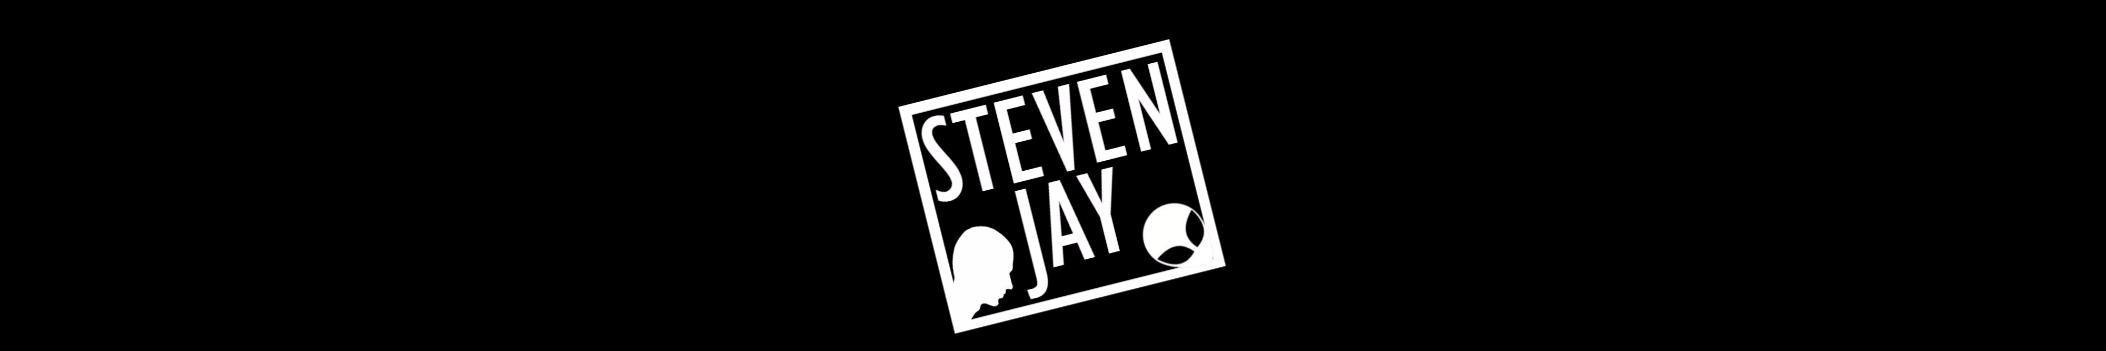 Steven Jay